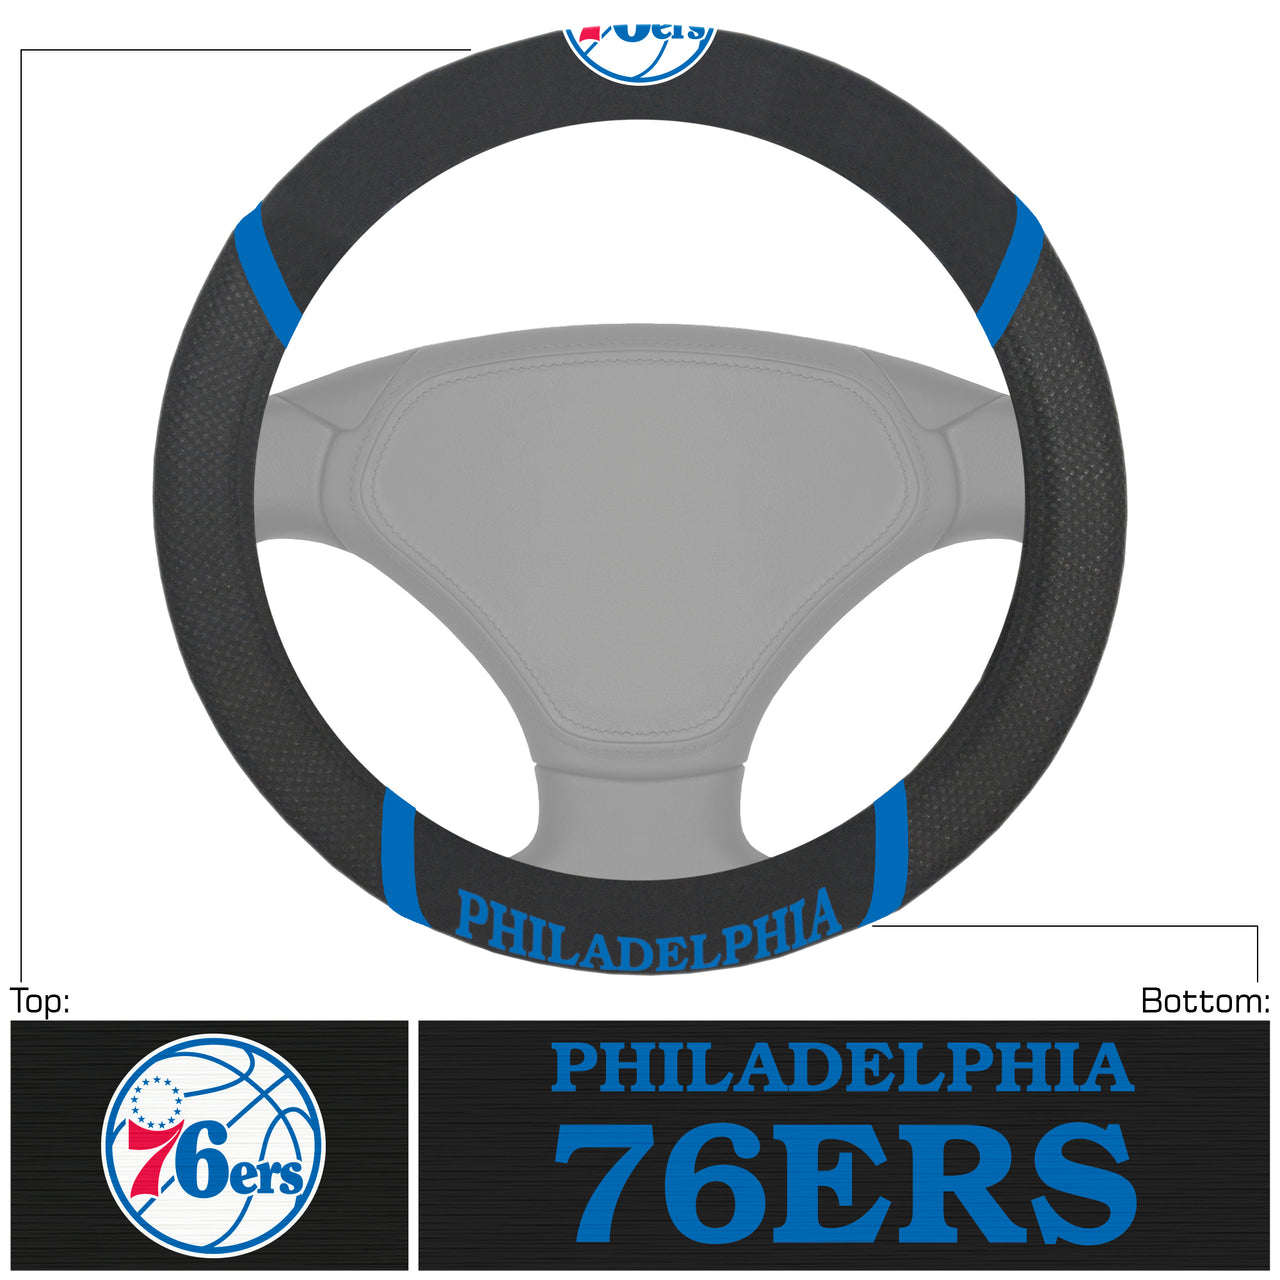 Philadelphia 76ers Deluxe Basketball Steering Wheel Cover - Dynasty Sports & Framing 